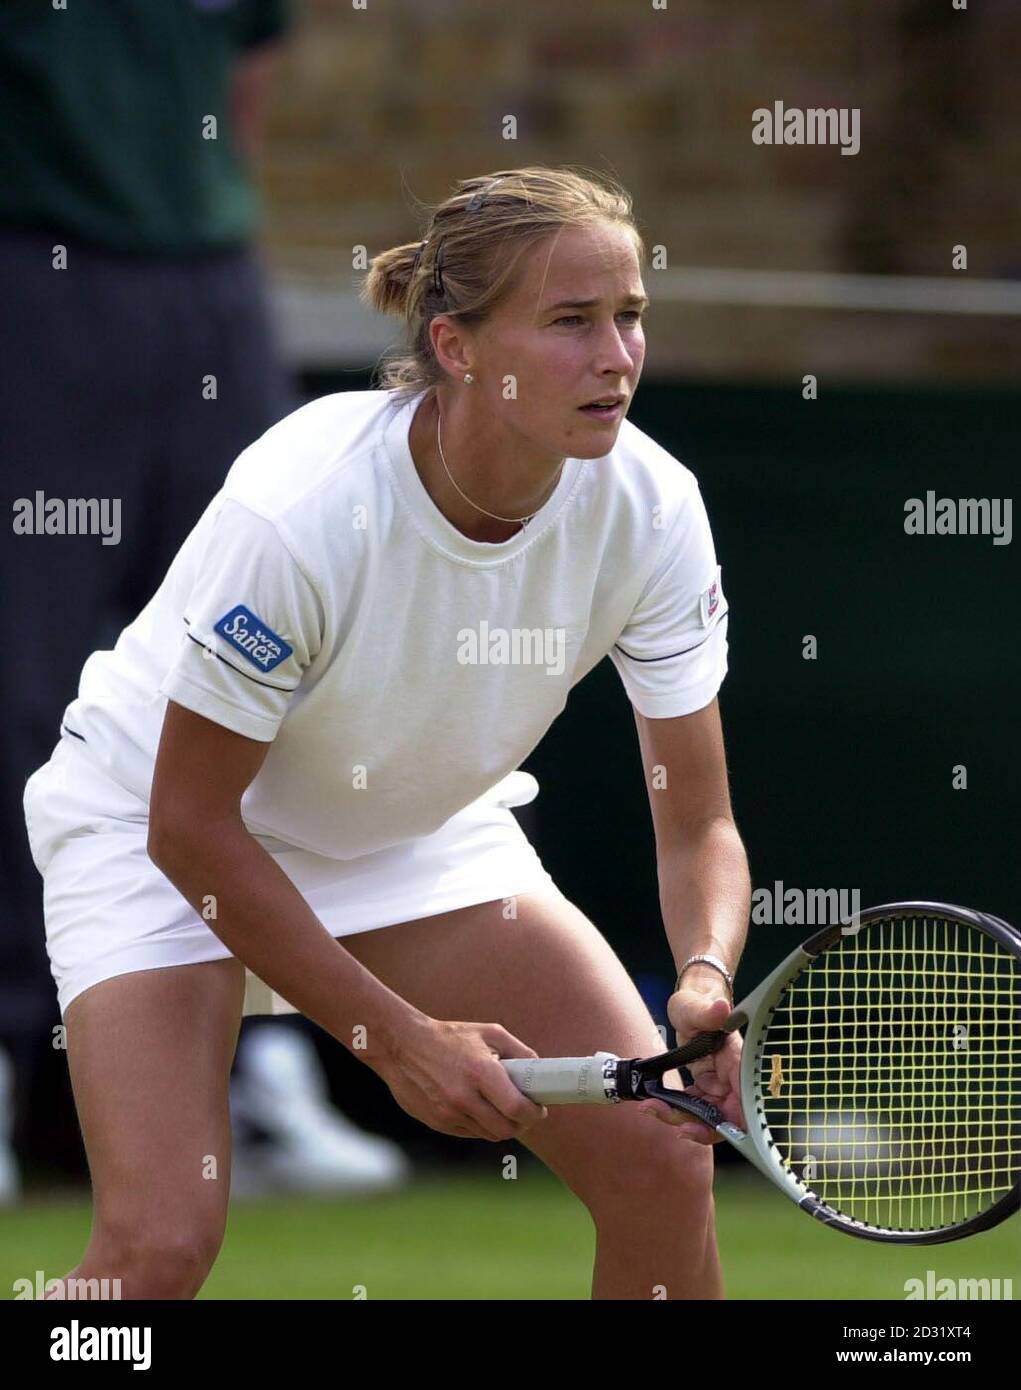 PAS D'UTILISATION COMMERCIALE : Victoria Davies en Grande-Bretagne en action pendant son double match avec Helen Crook contre Fusaï et Grande lors des championnats de tennis de pelouse, Wimbledon. Banque D'Images